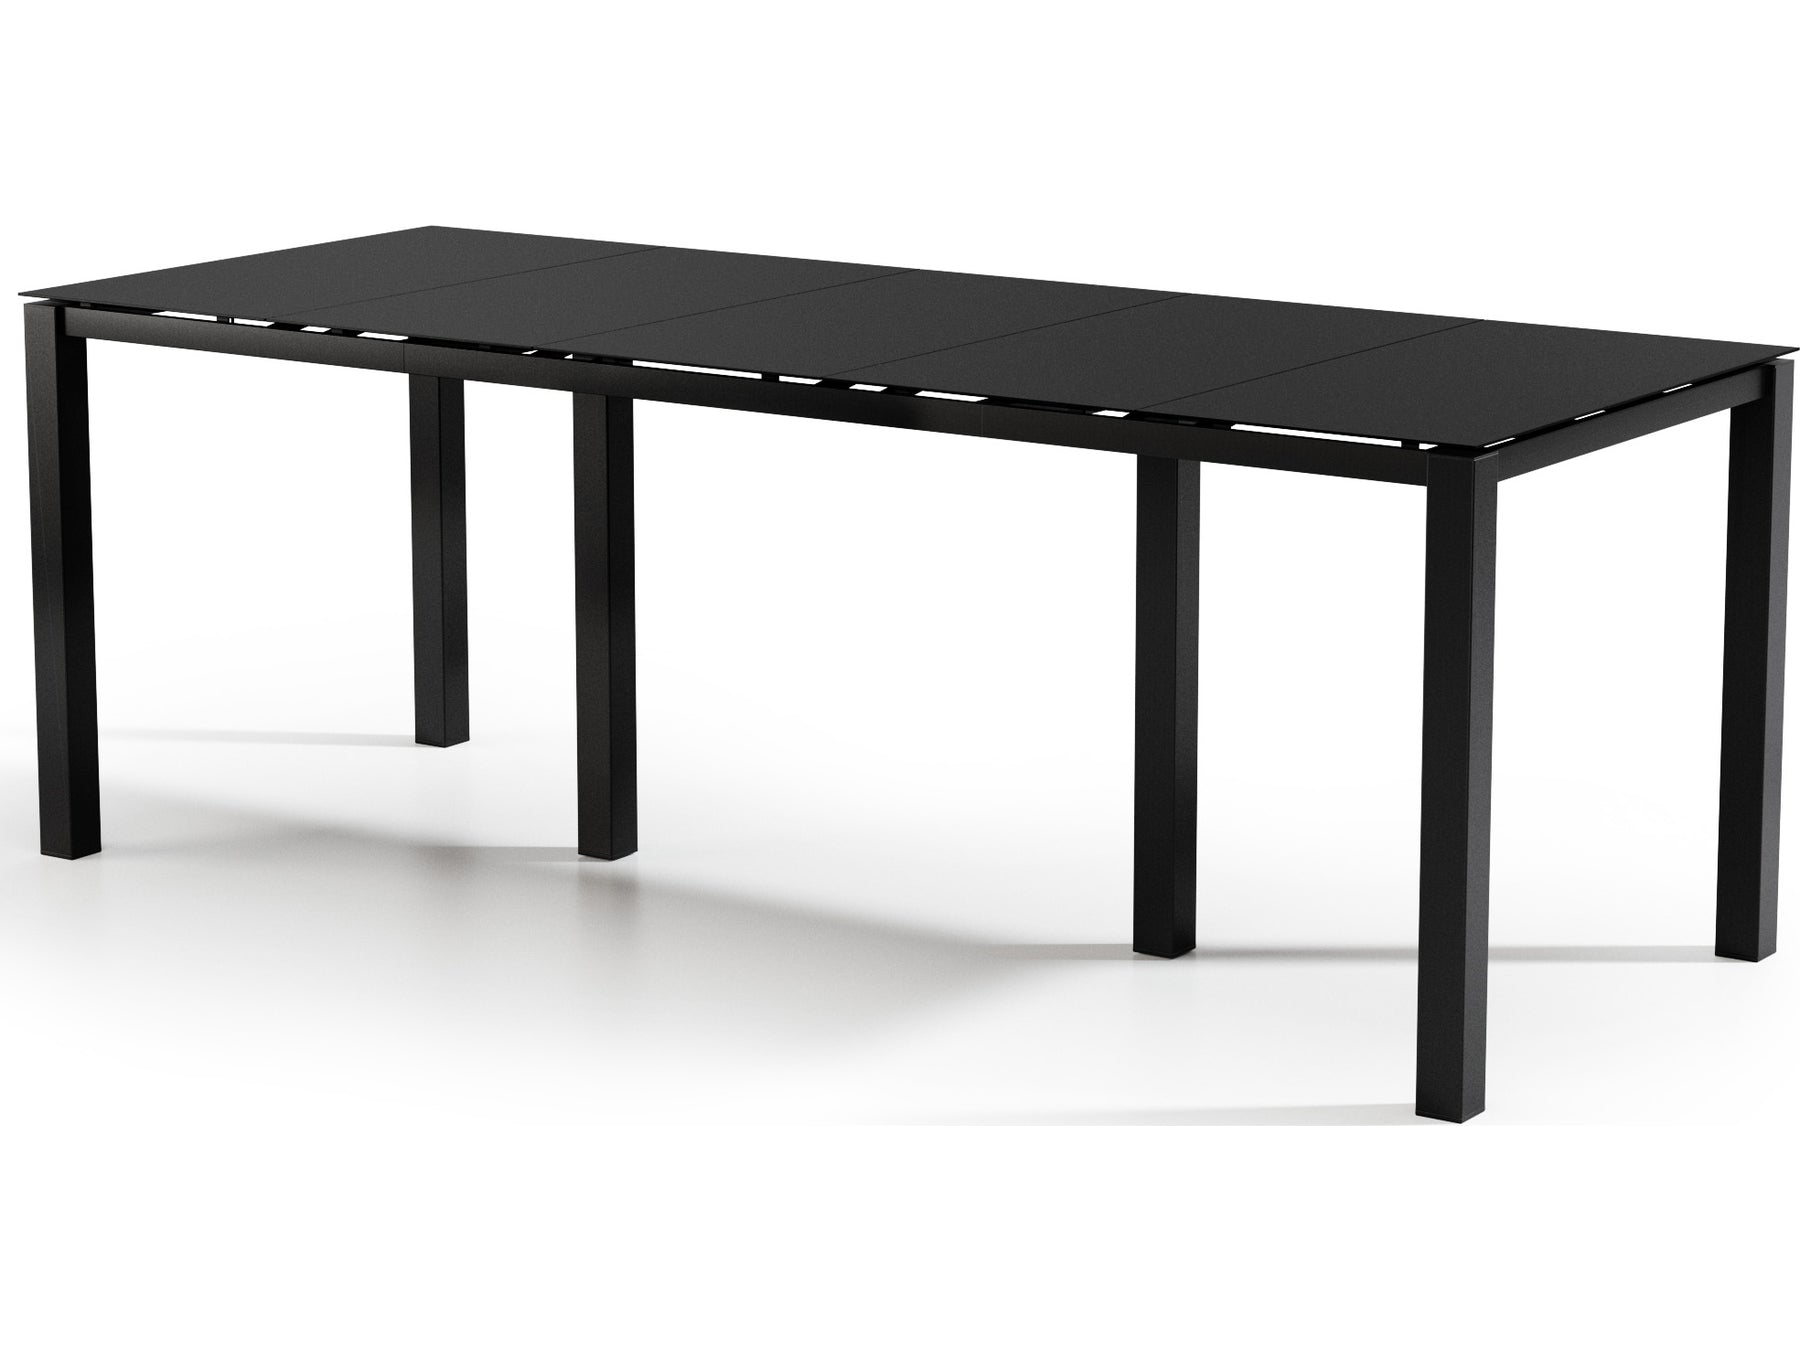 Homecrest Mode Aluminum 110''W x 44''D Rectangular Bar Table